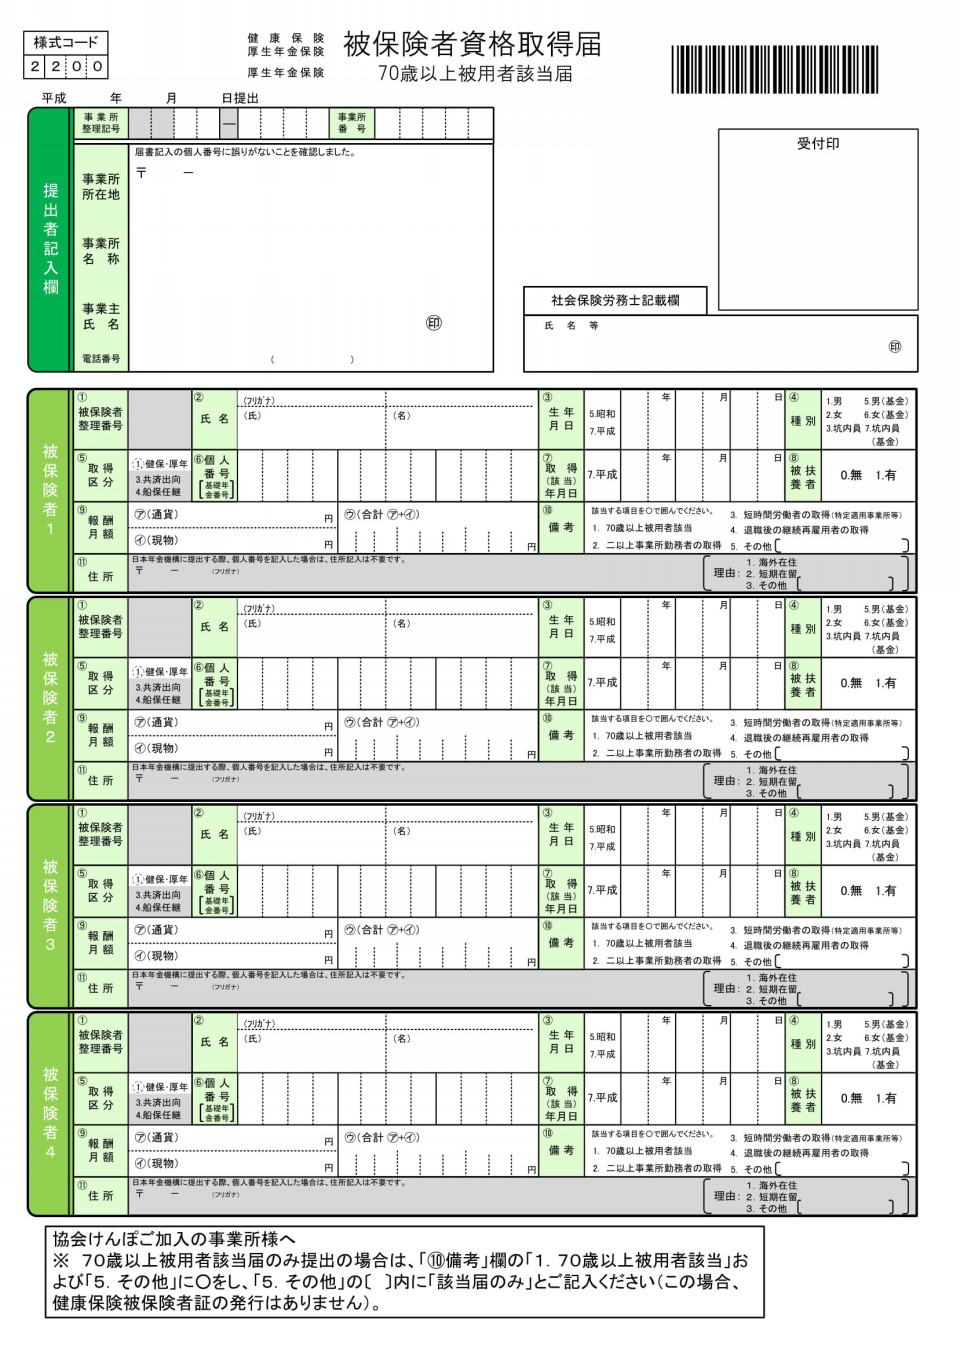 日本 年金 機構 算定 基礎 届